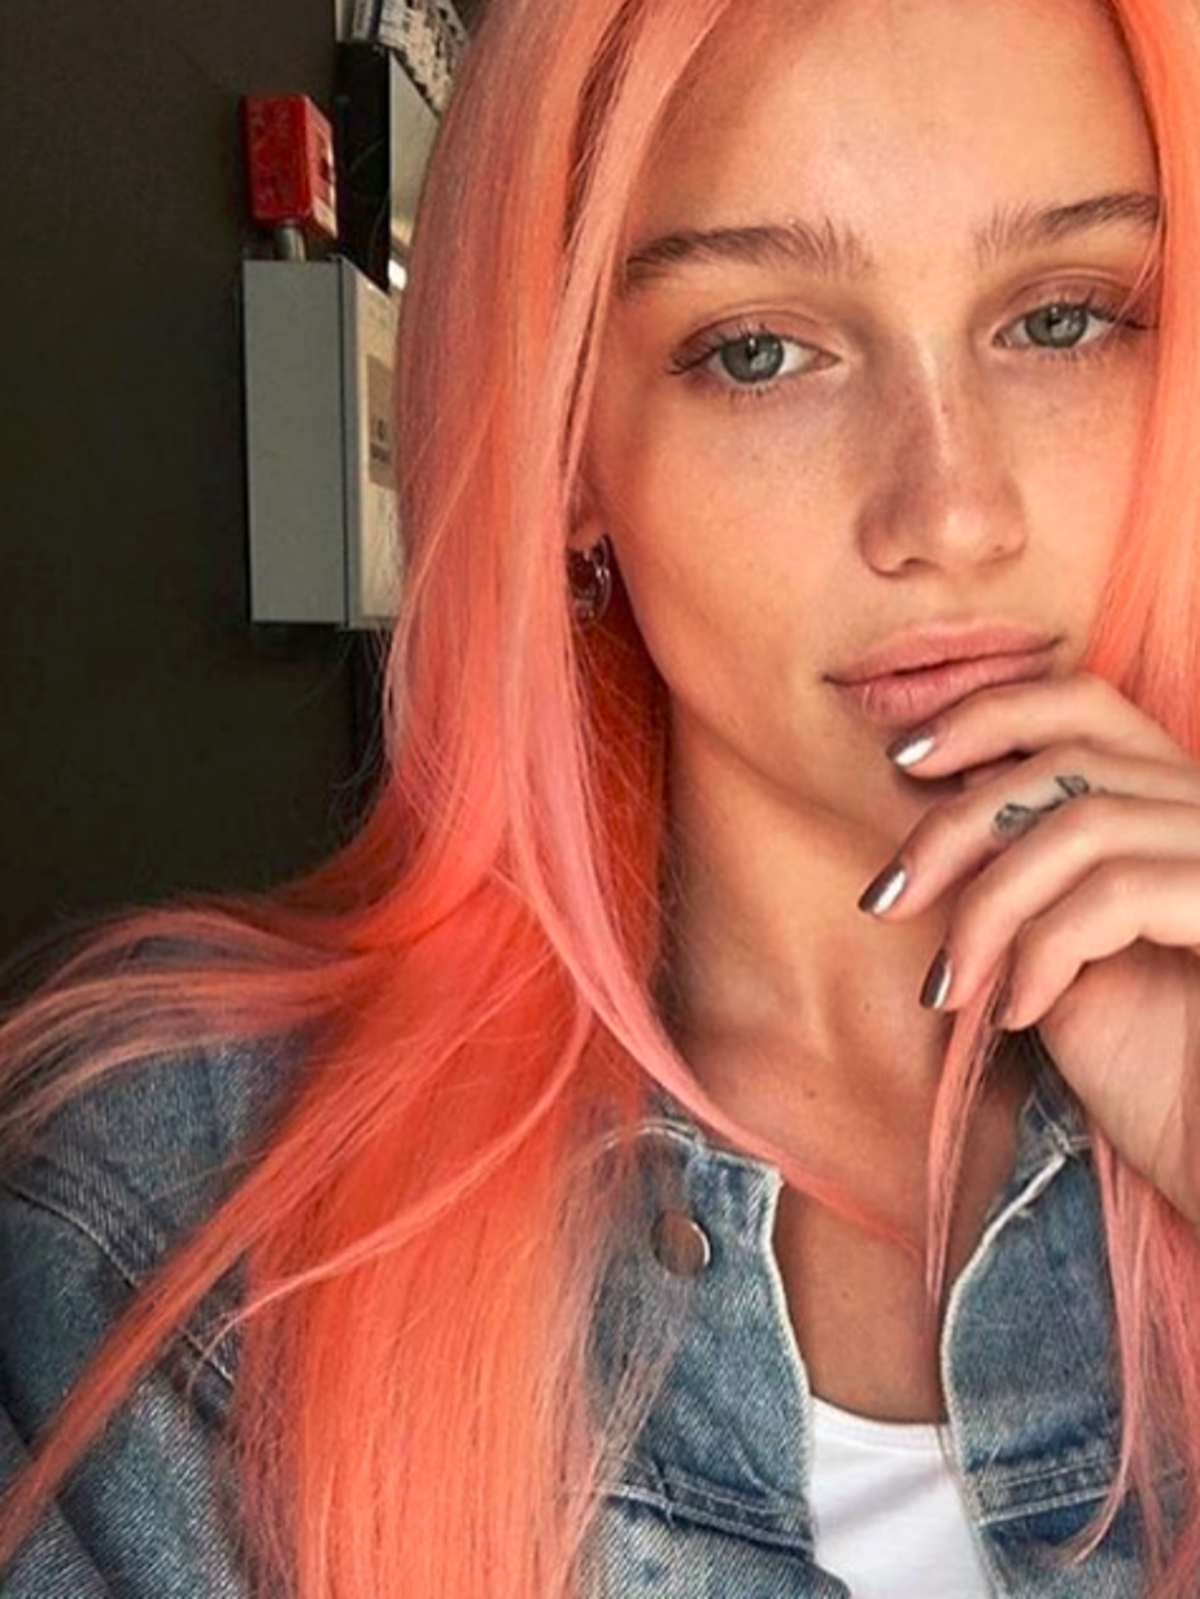 #peachhair - włosy w kolorze Peach Emoji